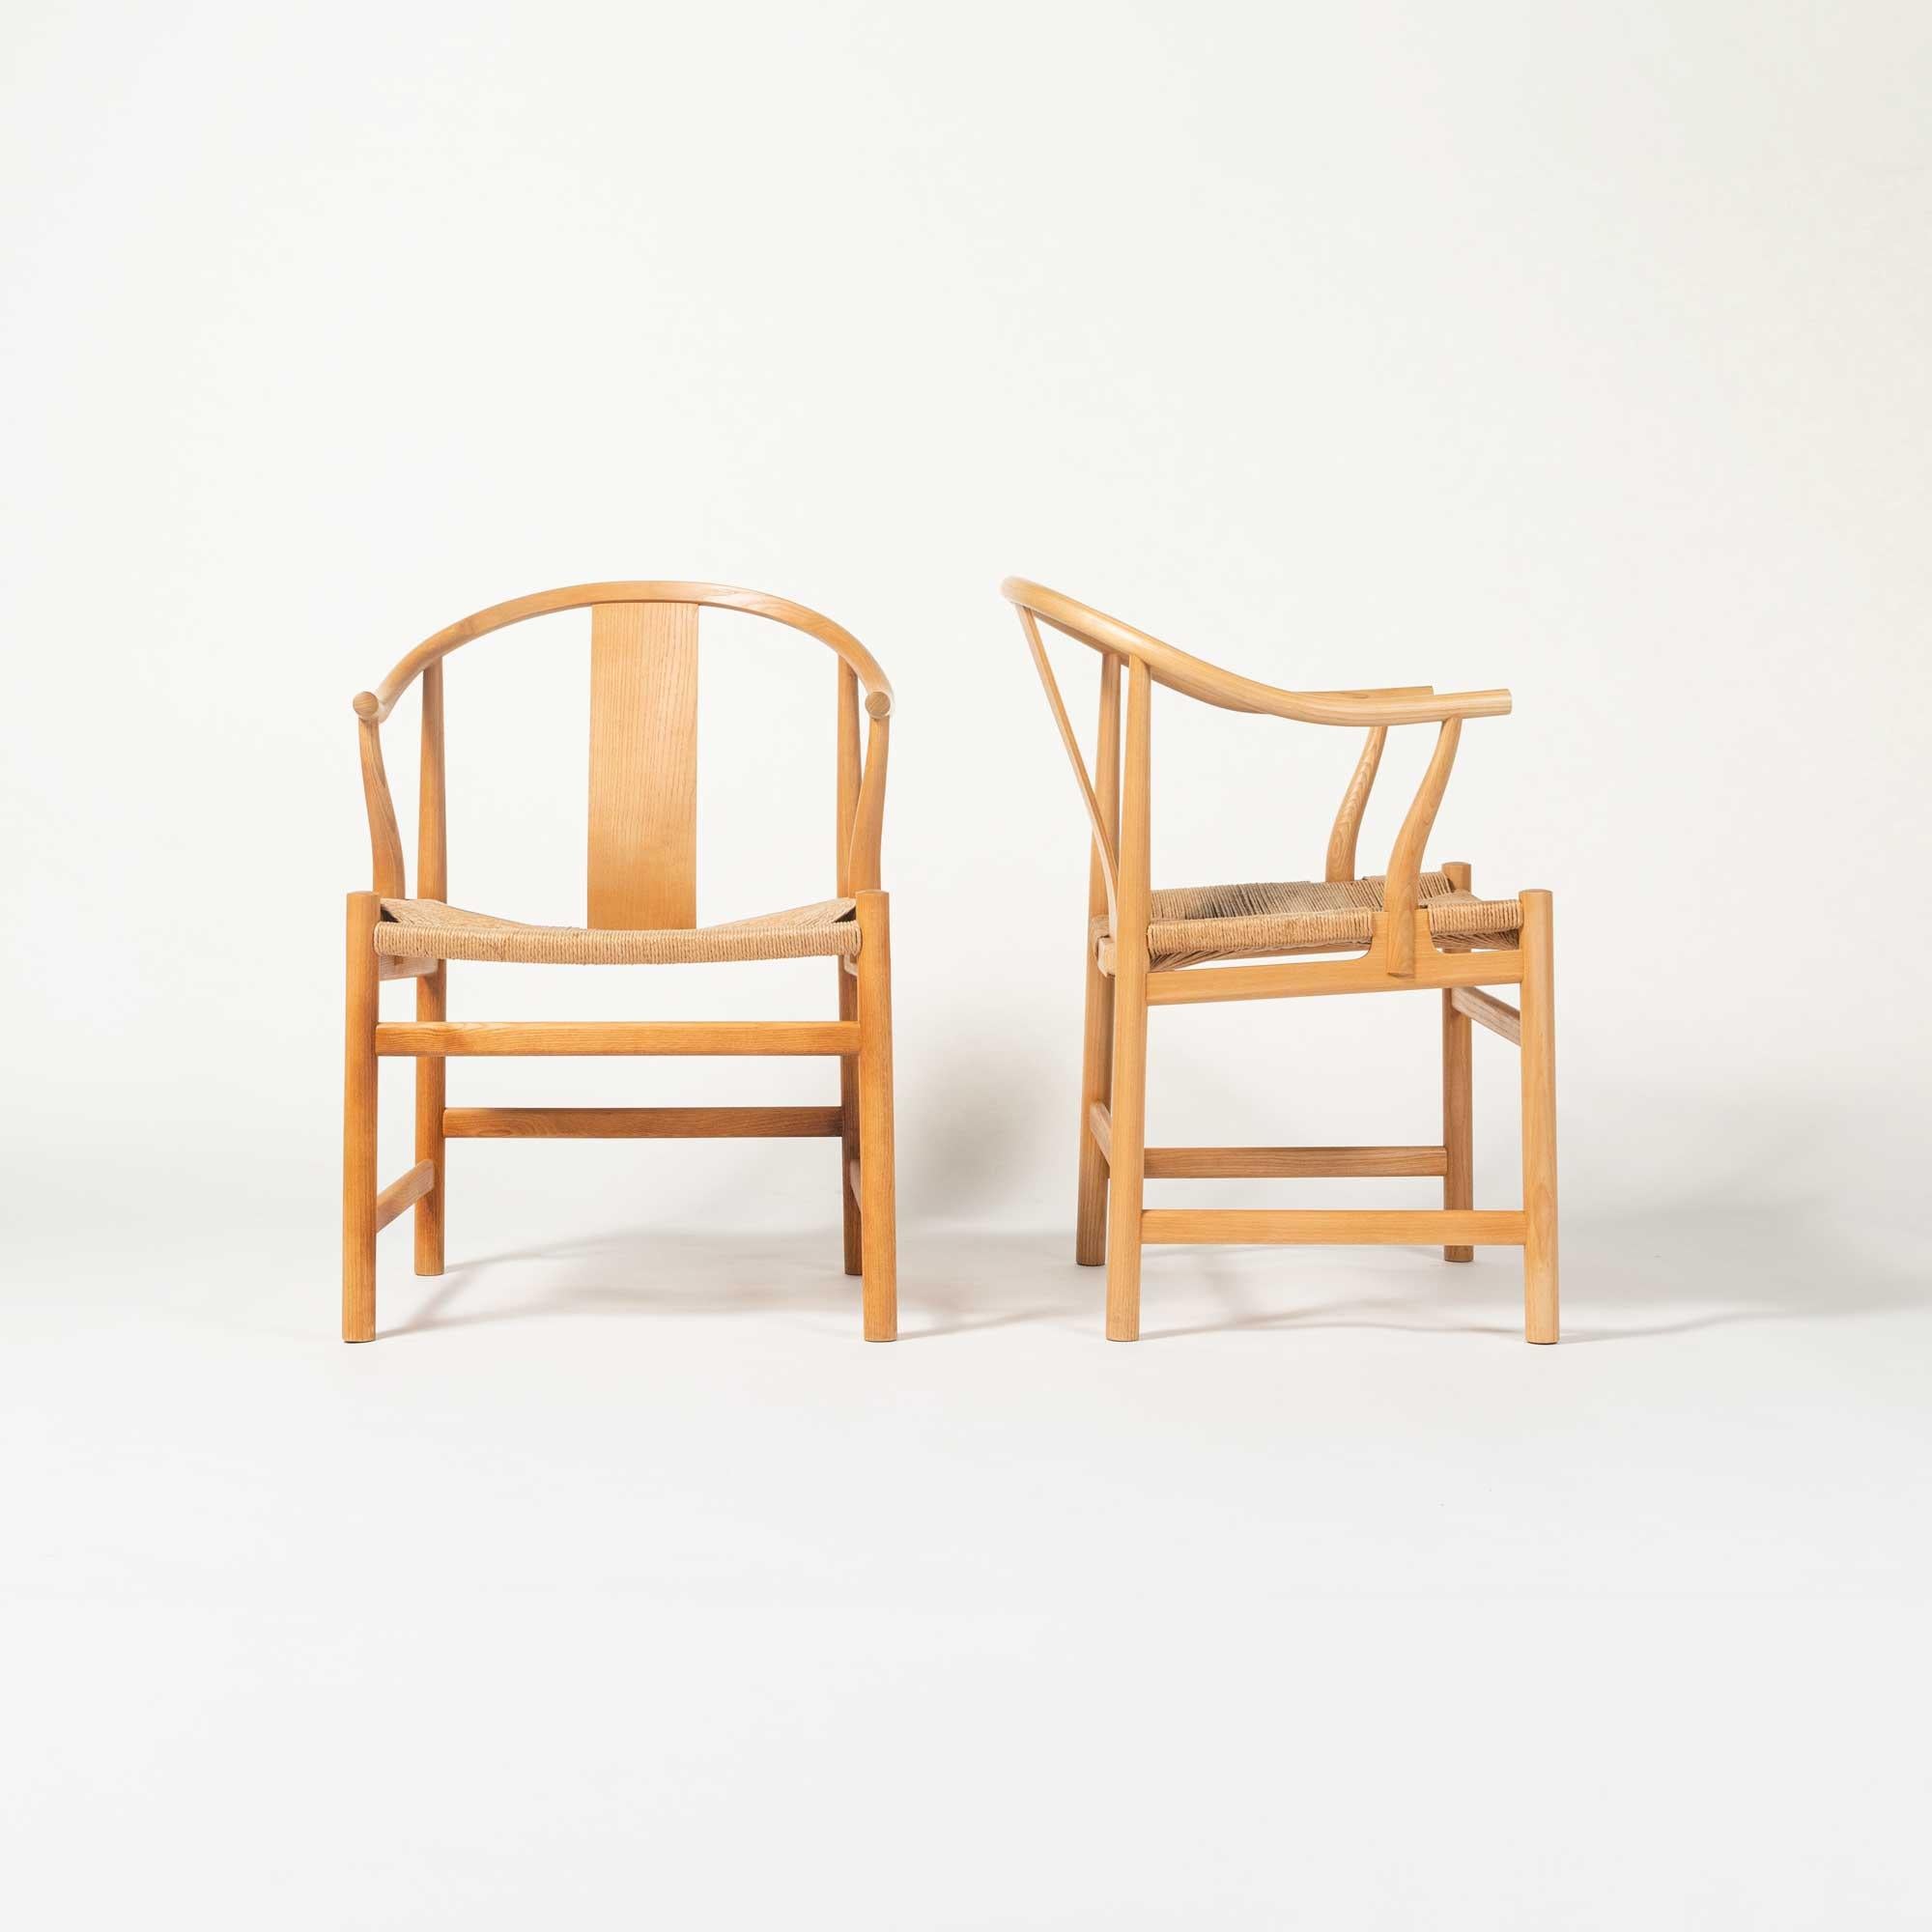 Lors de l'exposition d'automne de la Guild en 1943, Wegner a présenté sa première version d'une chaise inspirée d'une ancienne chaise chinoise, qu'il avait vue au Musée danois des arts industriels. Depuis, d'autres versions sont apparues. Le